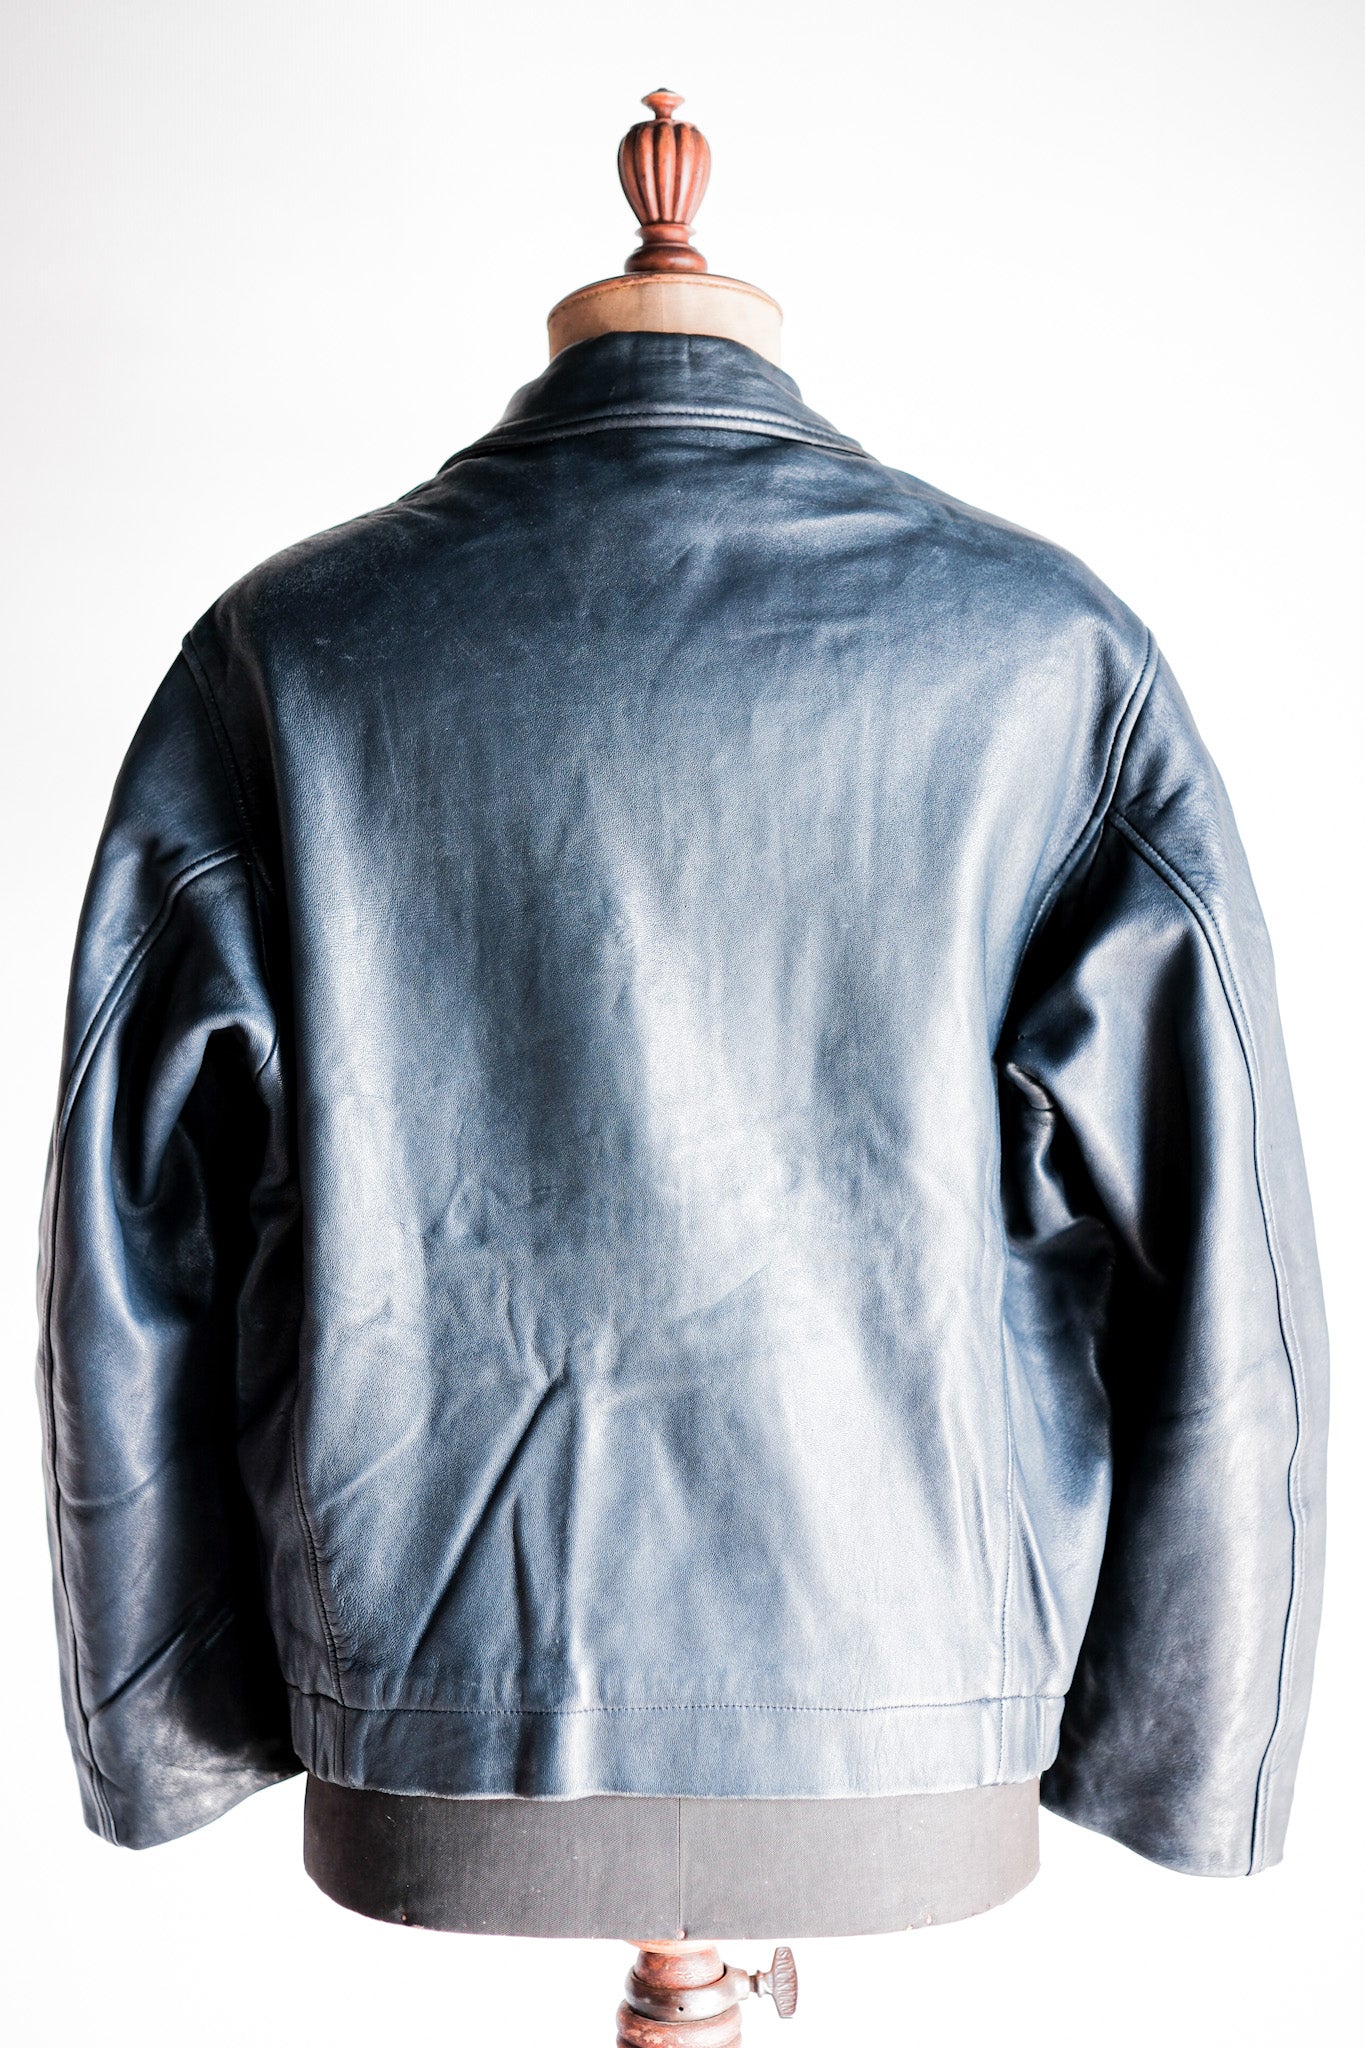 [~ 70 년대] 프랑스 공군 파일럿 가죽 재킷과 중국 스트랩